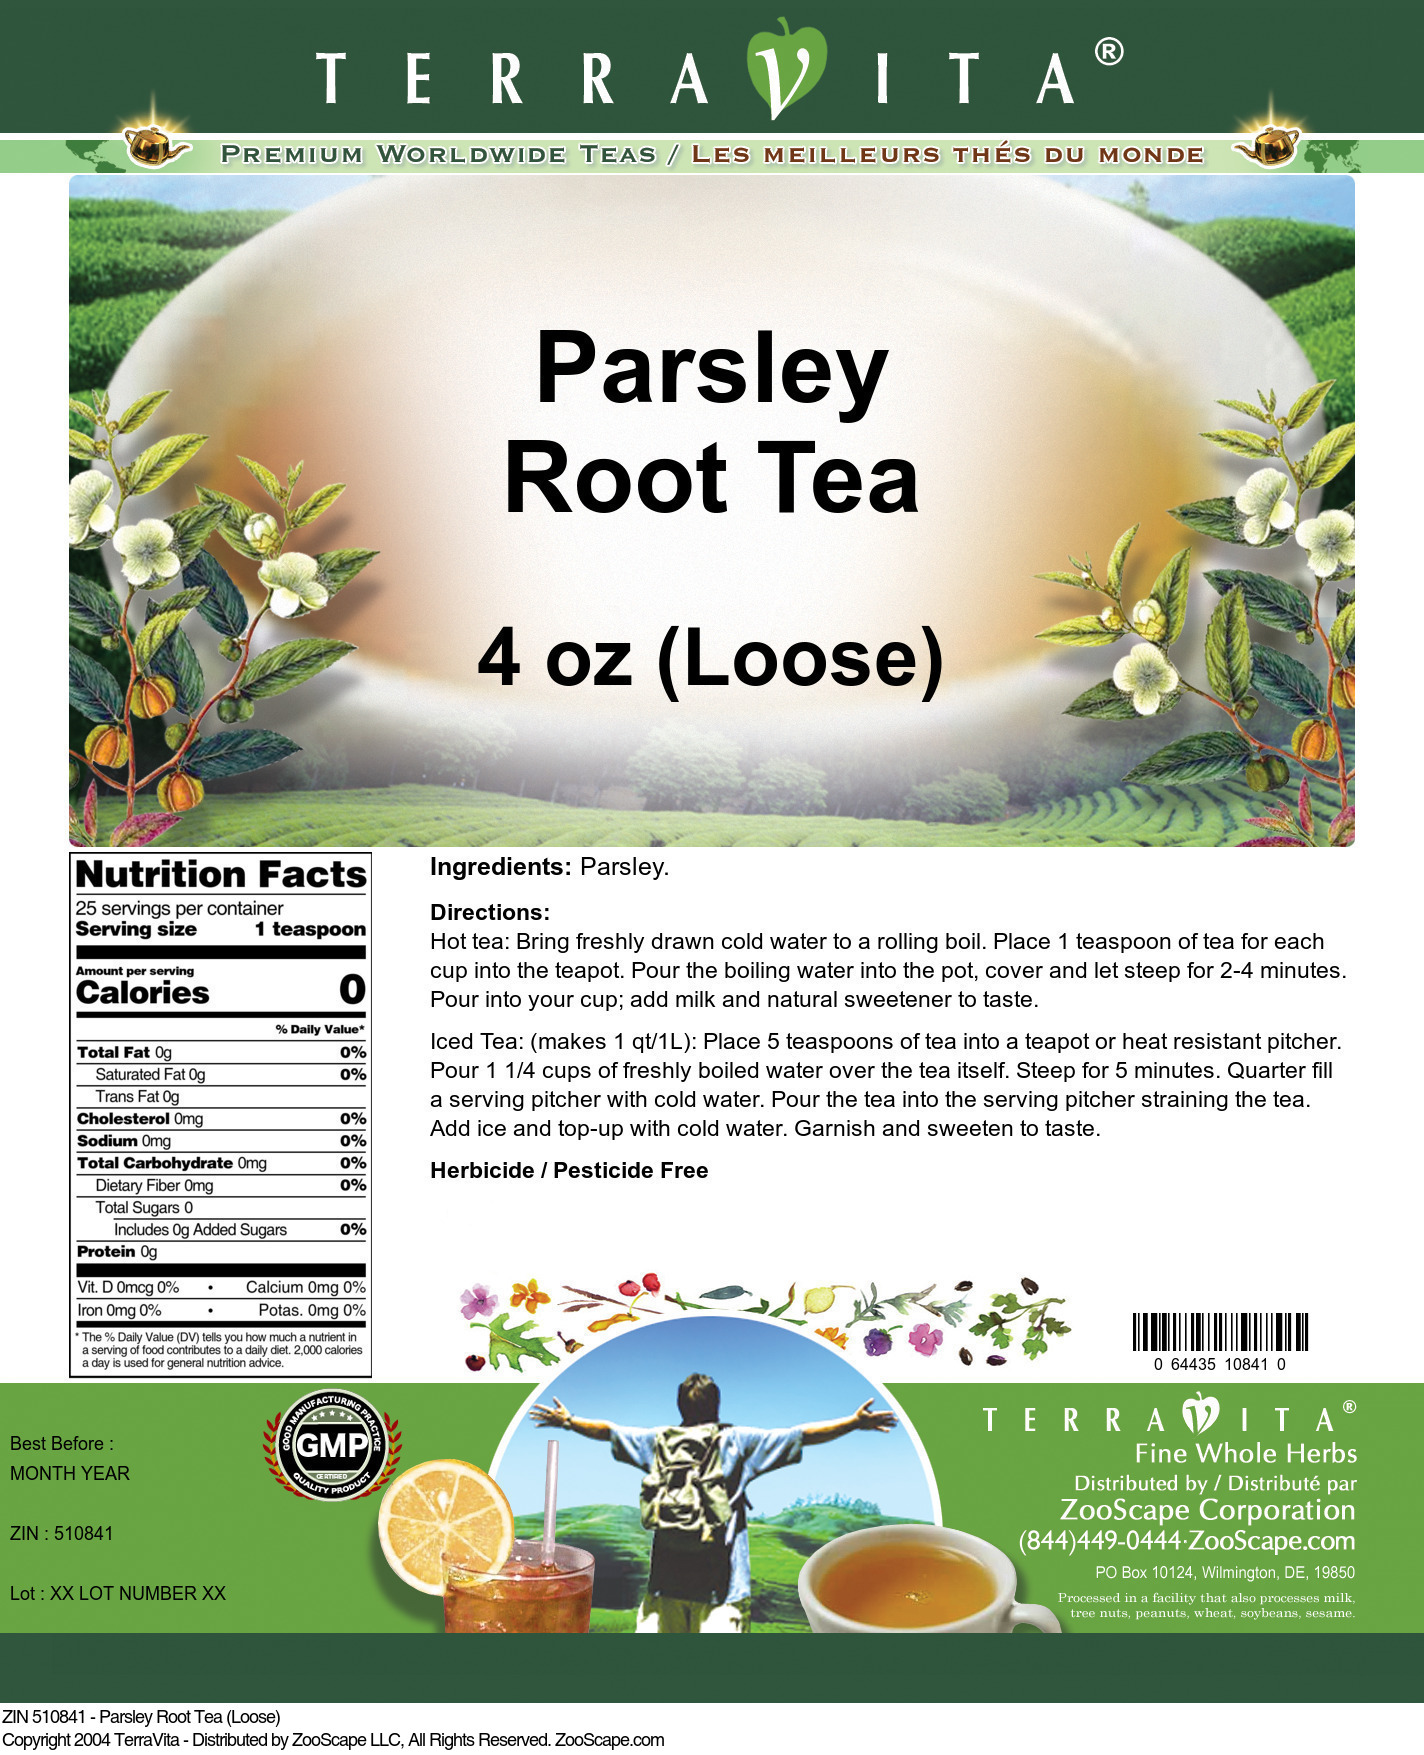 Parsley Root Tea (Loose) - Label